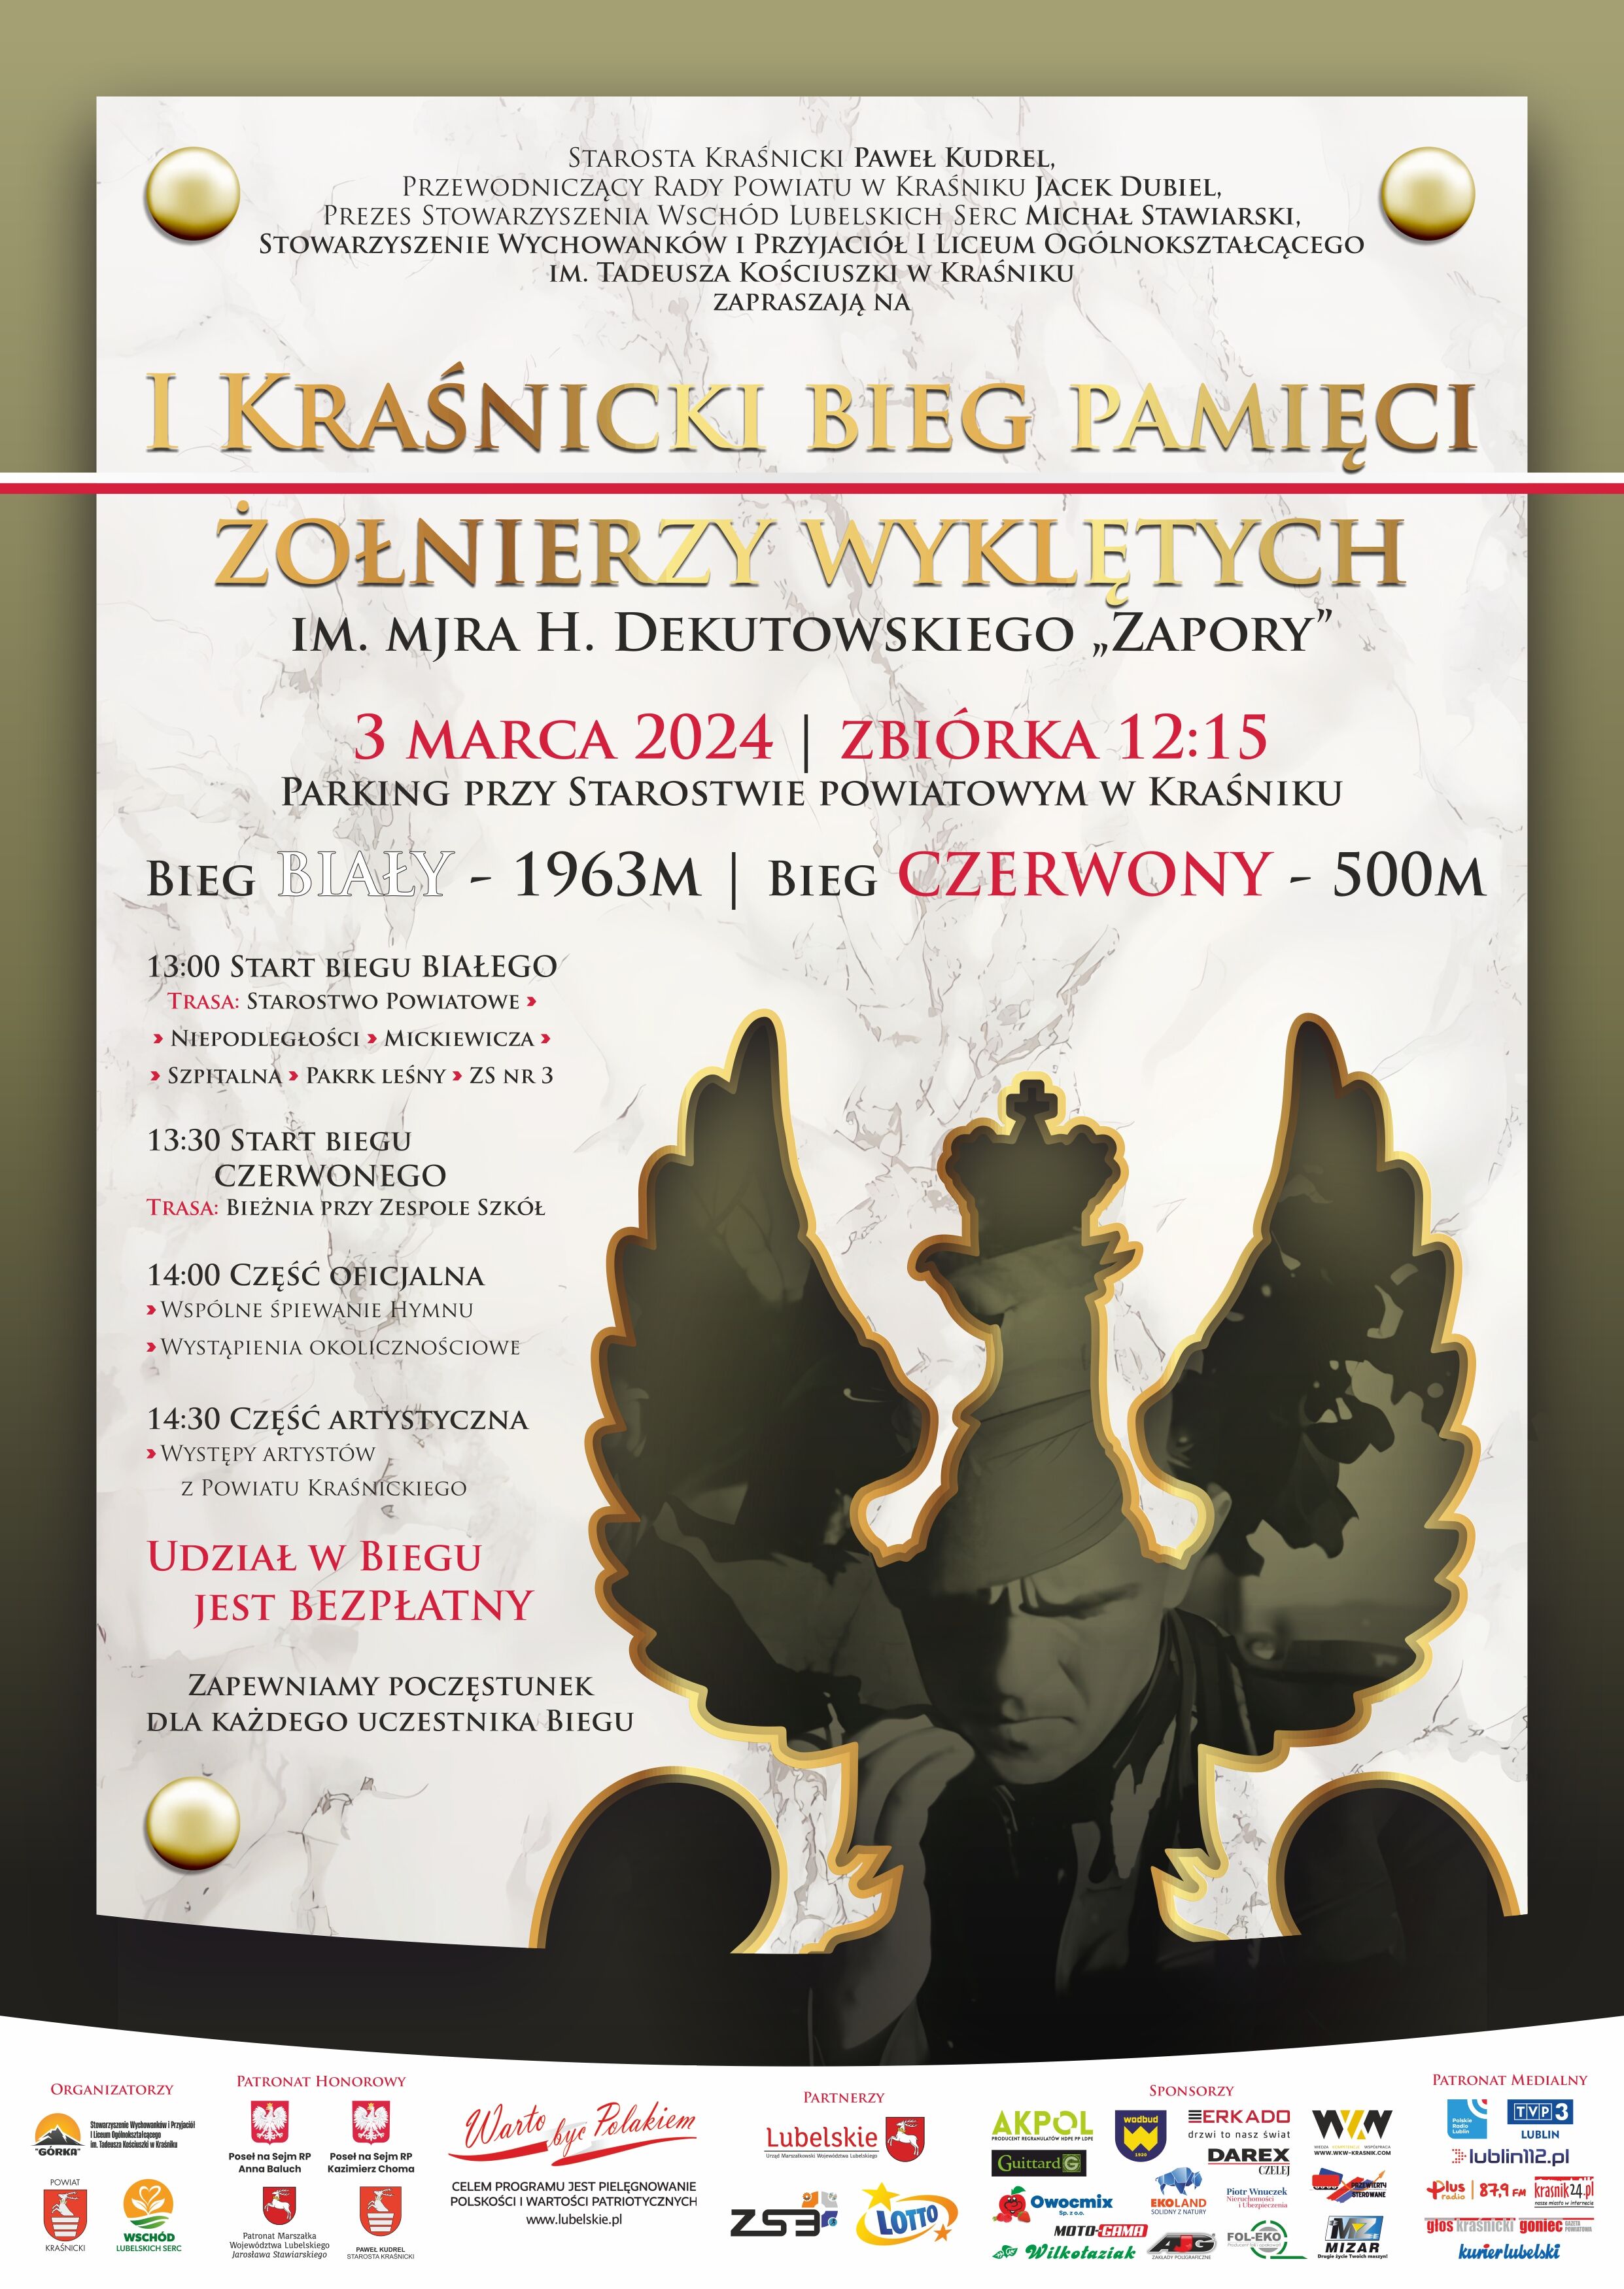 Plakat wydarzenia z centralnie umieszczoną postacią w stylizowanej żołnierskiej zbroi, z elementami graficznymi i tekstem informującym o rekonstrukcji historycznej poświęconej Żołnierzom Wyklętym, zaplanowanej na 3 marca 2023 roku.